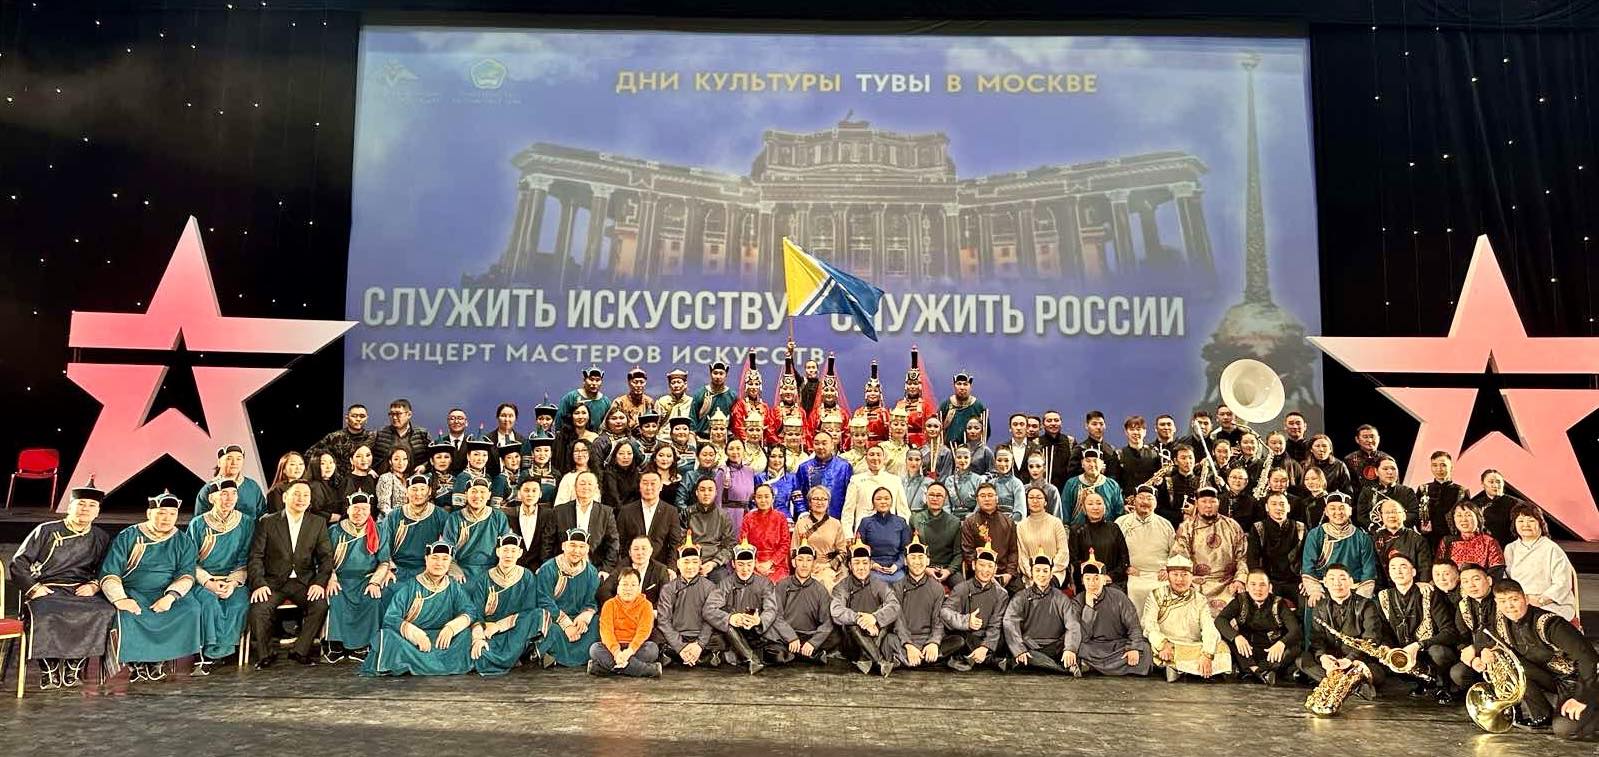 В Москве завершились Дни культуры Тувы